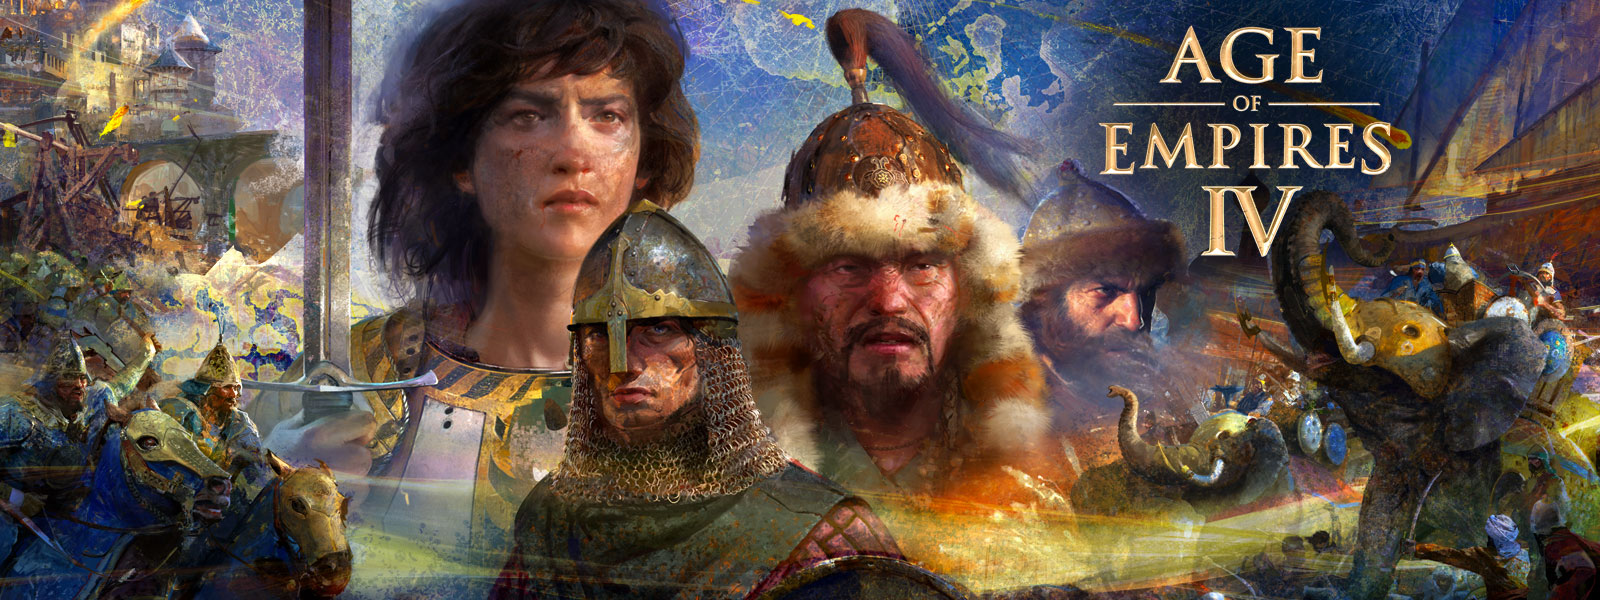 Age of Empires IV. Quatre personnages sur un arrière-plan représentant une carte, entourés de scènes de guerre, d’éléphants et de cavaliers